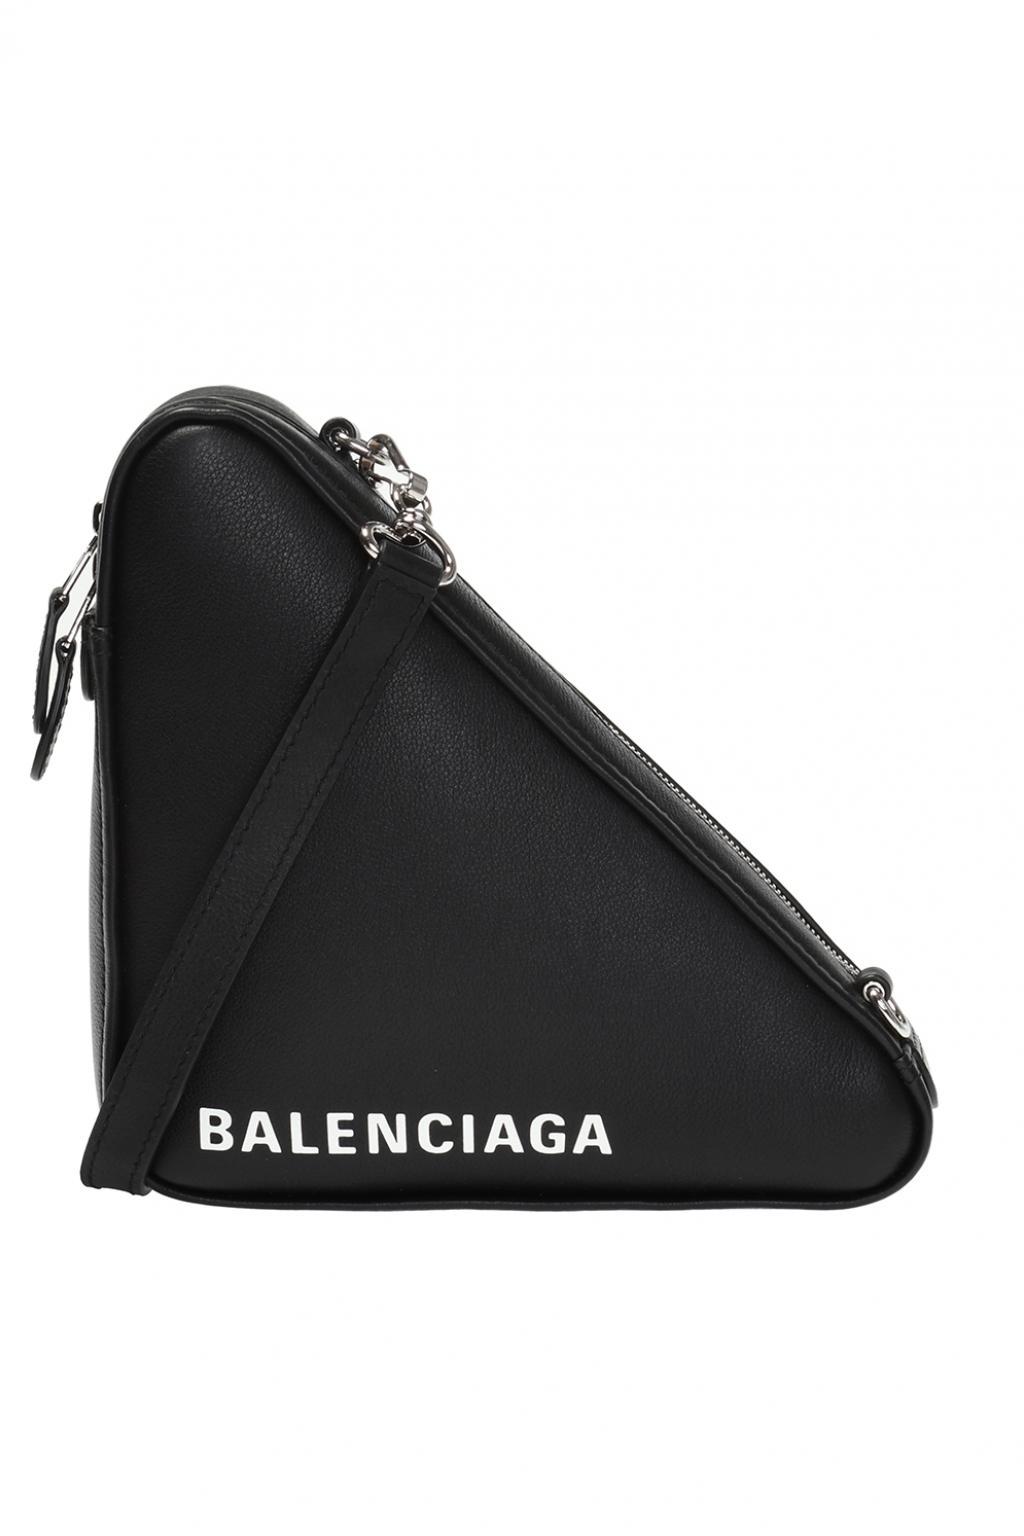 Lyst - Balenciaga 'triangle' Shoulder Bag in Black